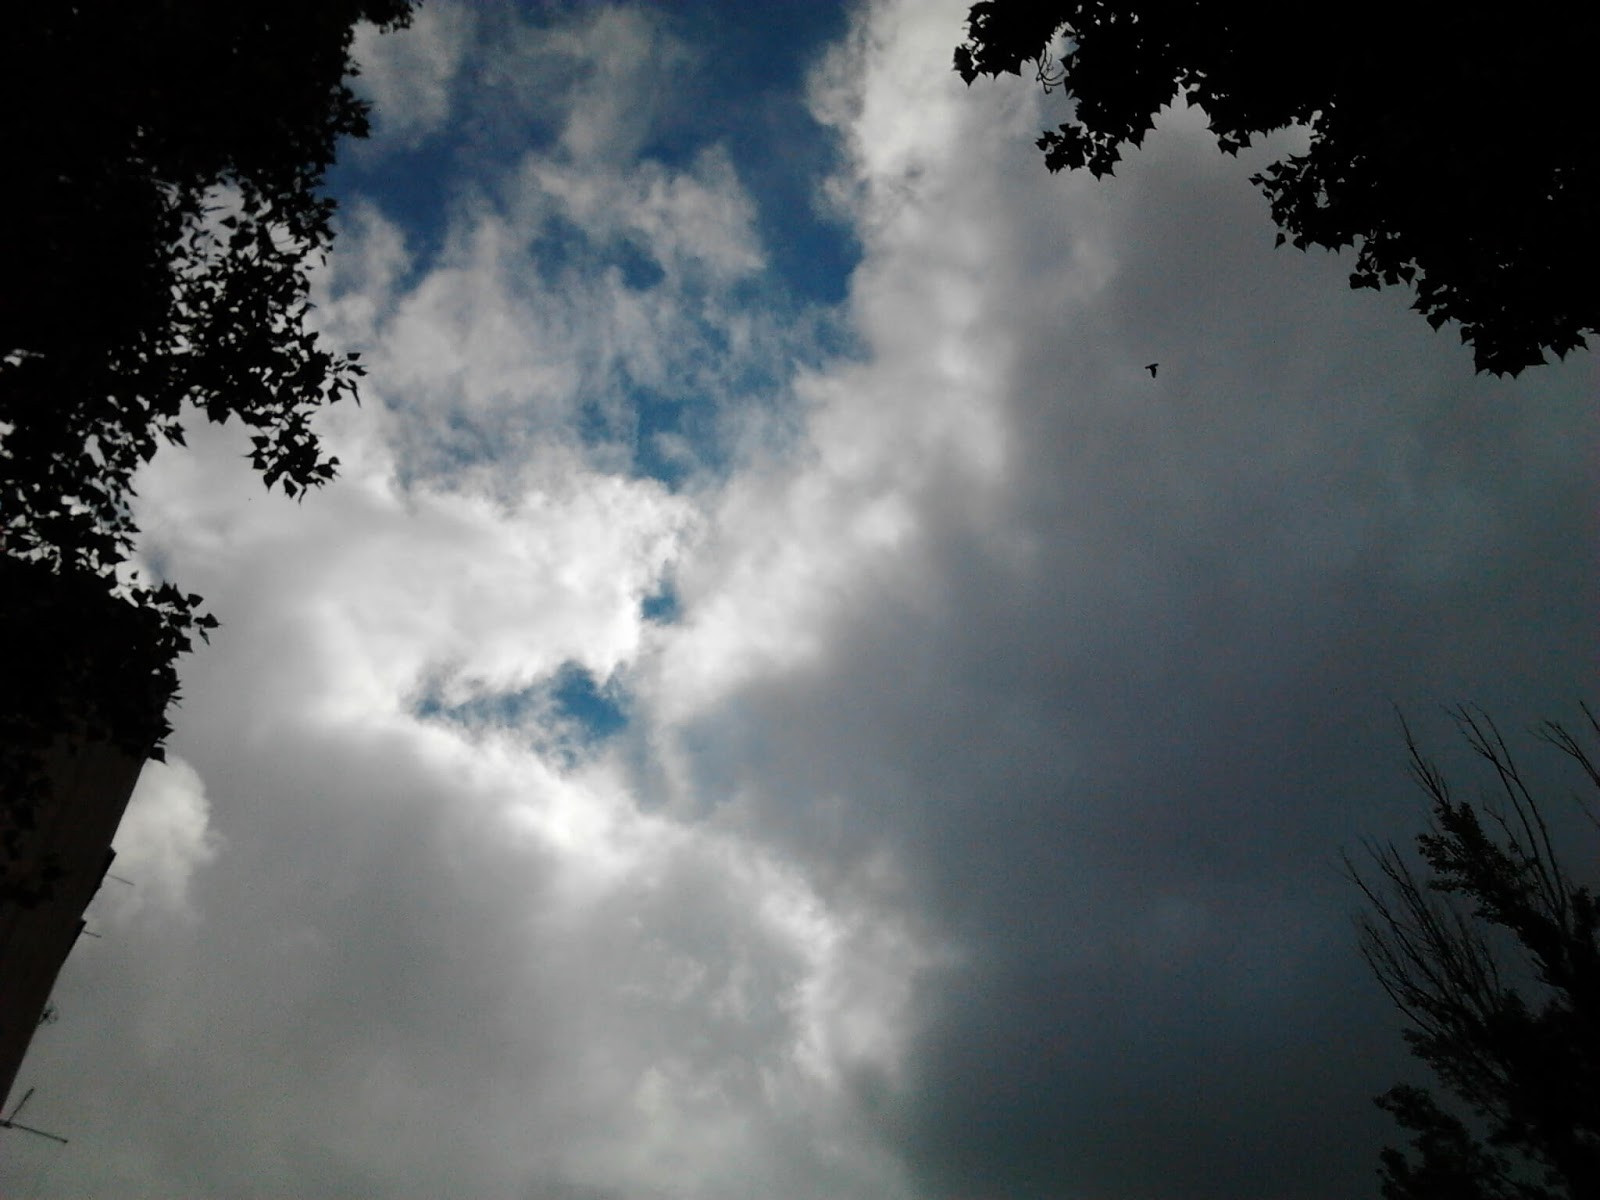 У дома.
Завершение прогулки после зарядки ( фото слева ).
((( i ))) Феномен, резонанс ( дождевые тучи, дождя нет ).
Погода в Херсоне: пасмурно, штиль / image22 / 2020.05.29 / 09:27